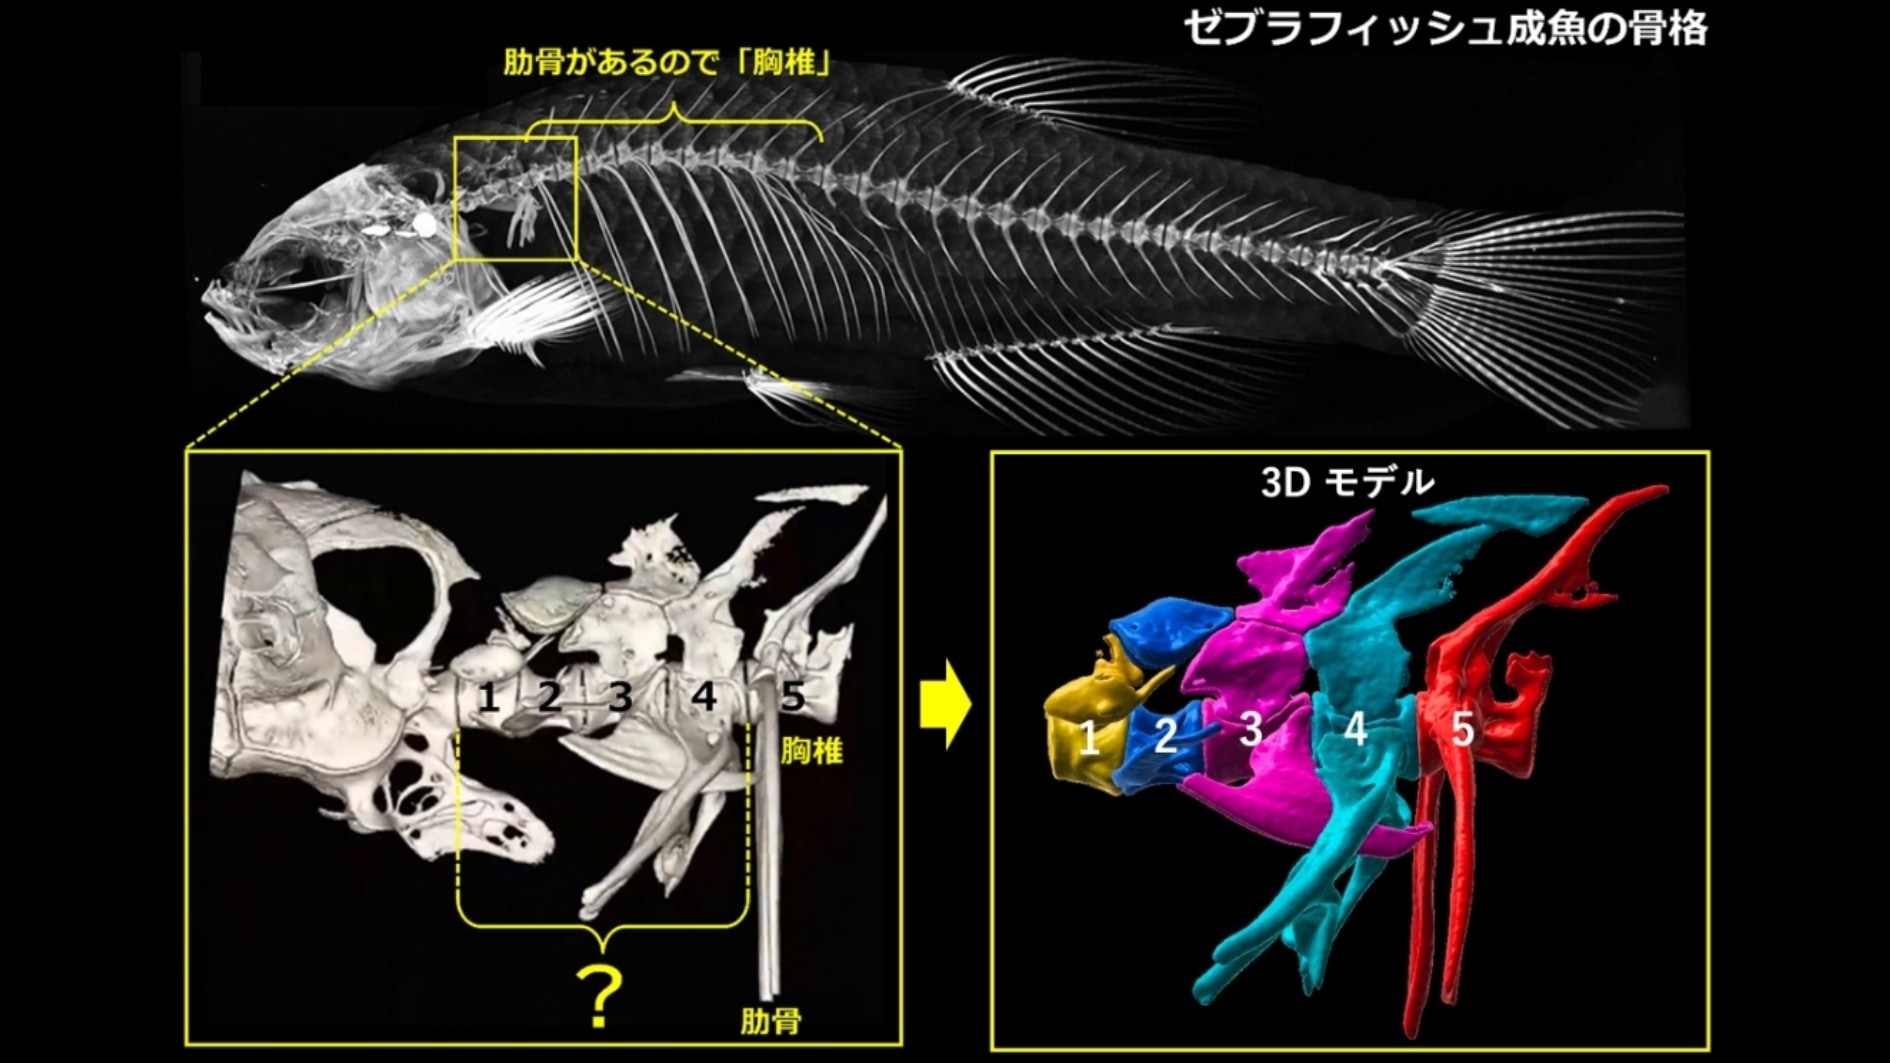 魚の頭蓋骨と胸骨の間には4個の骨があることが知られています。しかしそれら4個が首の骨かどうかは不明でした